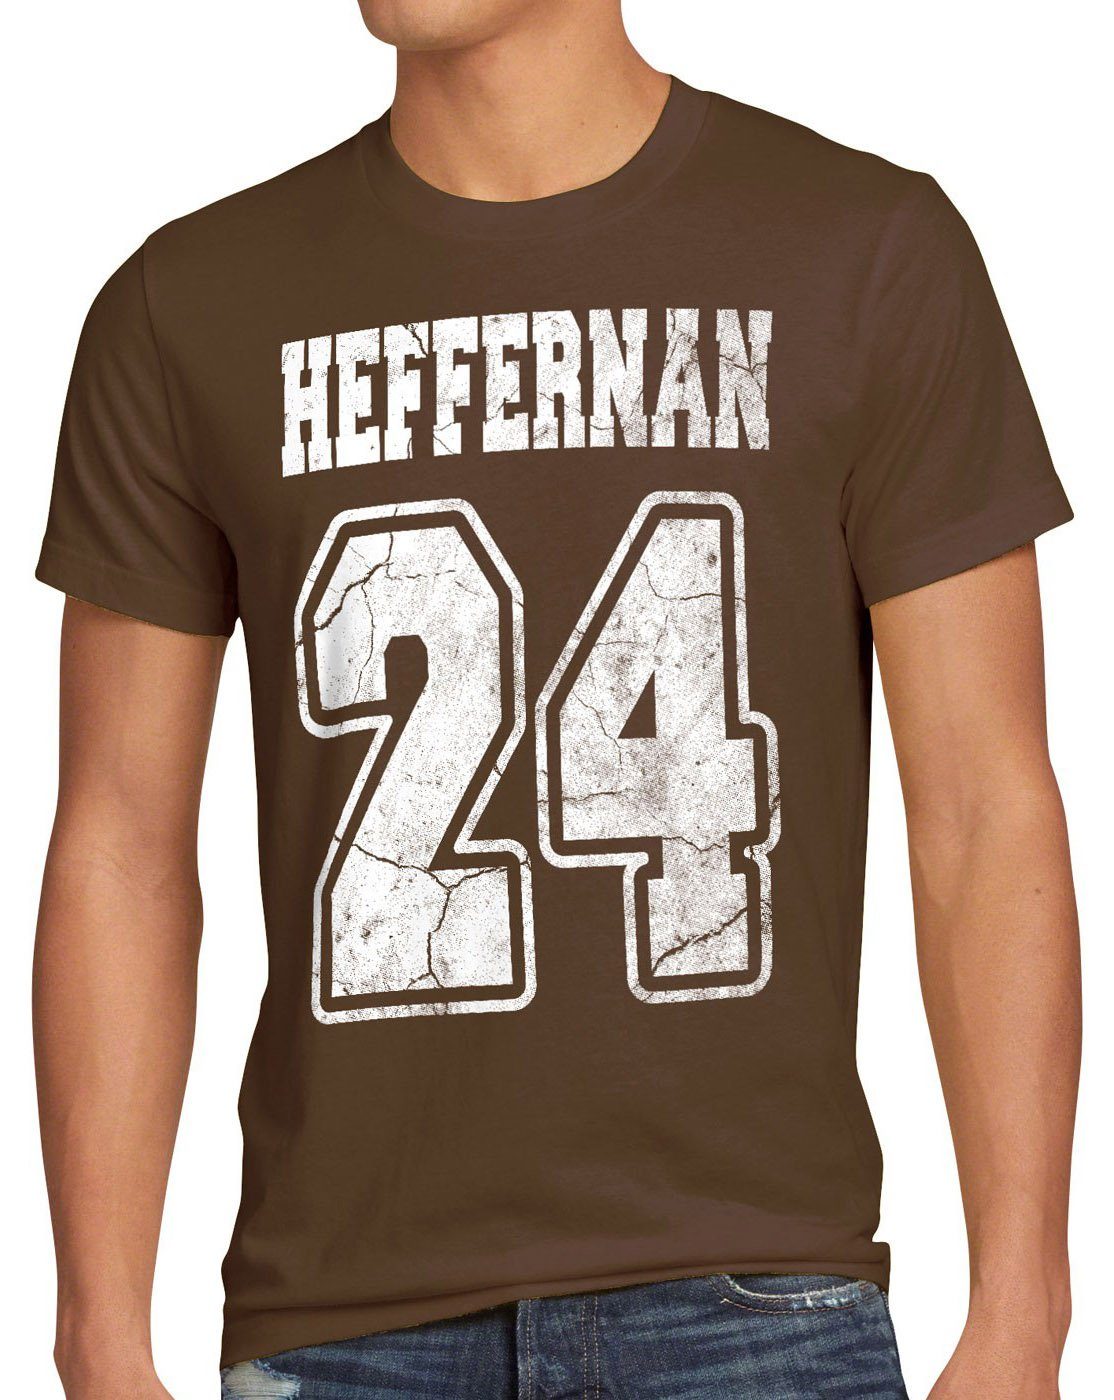 the coopers T-Shirt Print-Shirt spooner braun sitcom style3 Heffernan queens of 24 Herren doug IPS king